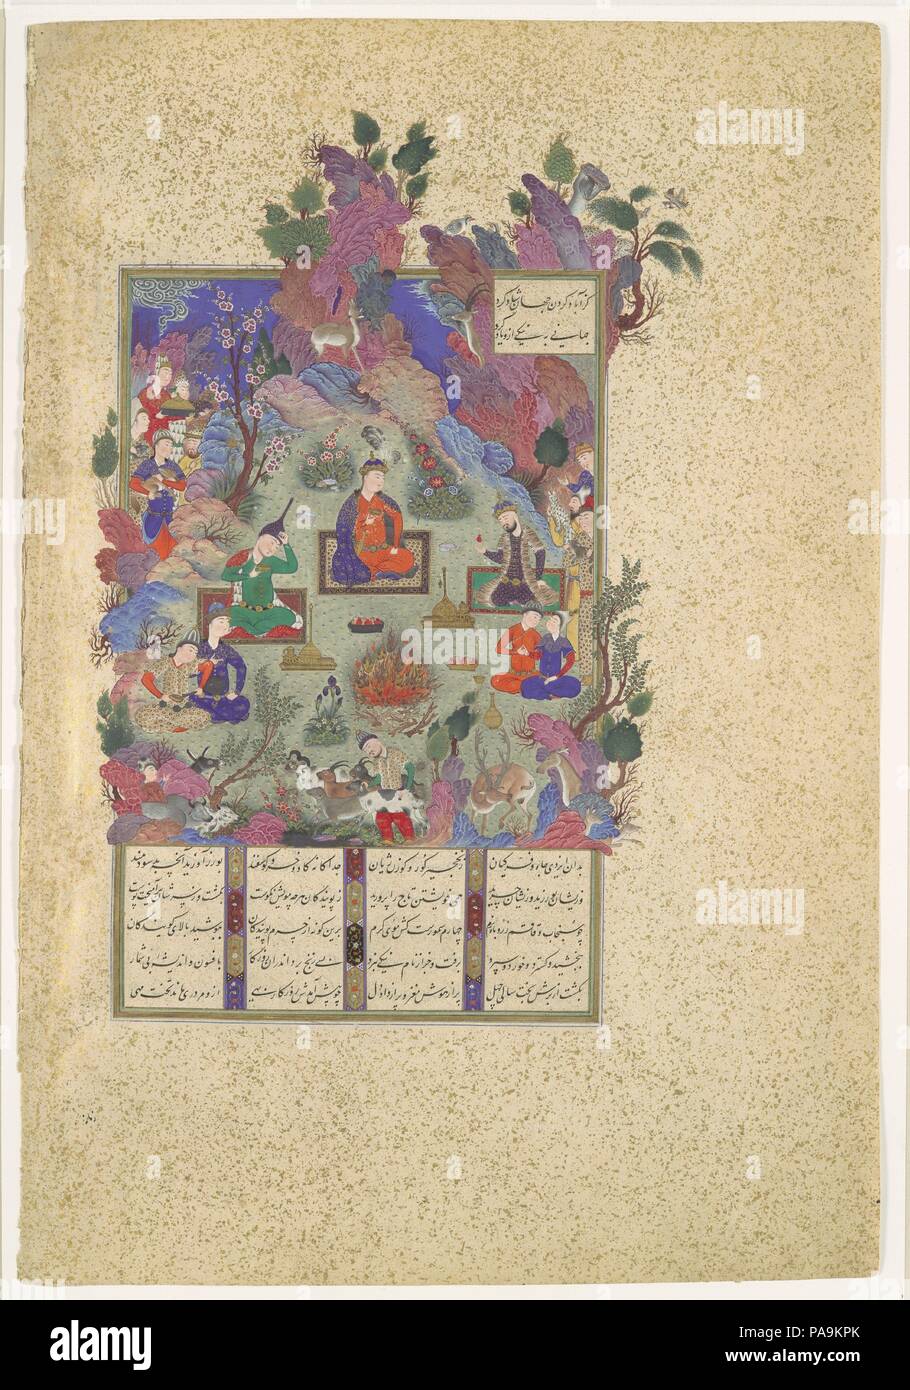 "Festa di Sada', folio 22v dal Shahnama (Libro dei Re) di Shah Tahmasp. Artista: dipinto attribuito a Sultan Muhammad (attivo prima metà del XVI secolo). Autore: Abu'l Qasim Firdausi (935-1020). Dimensioni: Pittura: H. 9 1/2 in. (24,1 cm) W. 9 1/16 in. (23 cm) Pagina: H. 18 1/2 in. (47 cm) W.12 1/2 in. (31,8 cm) tappeto: H. 22 a. (55,9 cm) W. 16 a. (40,6 cm). Data: ca. 1525. Nel regno di Hushang, nipote di Gayumars, venuto nel mondo a capire l'utilità dei minerali e delle arti del fabbro, Agricoltura e irrigazione. Un giorno, Hushang spiato un drago in agguato dietro il Foto Stock